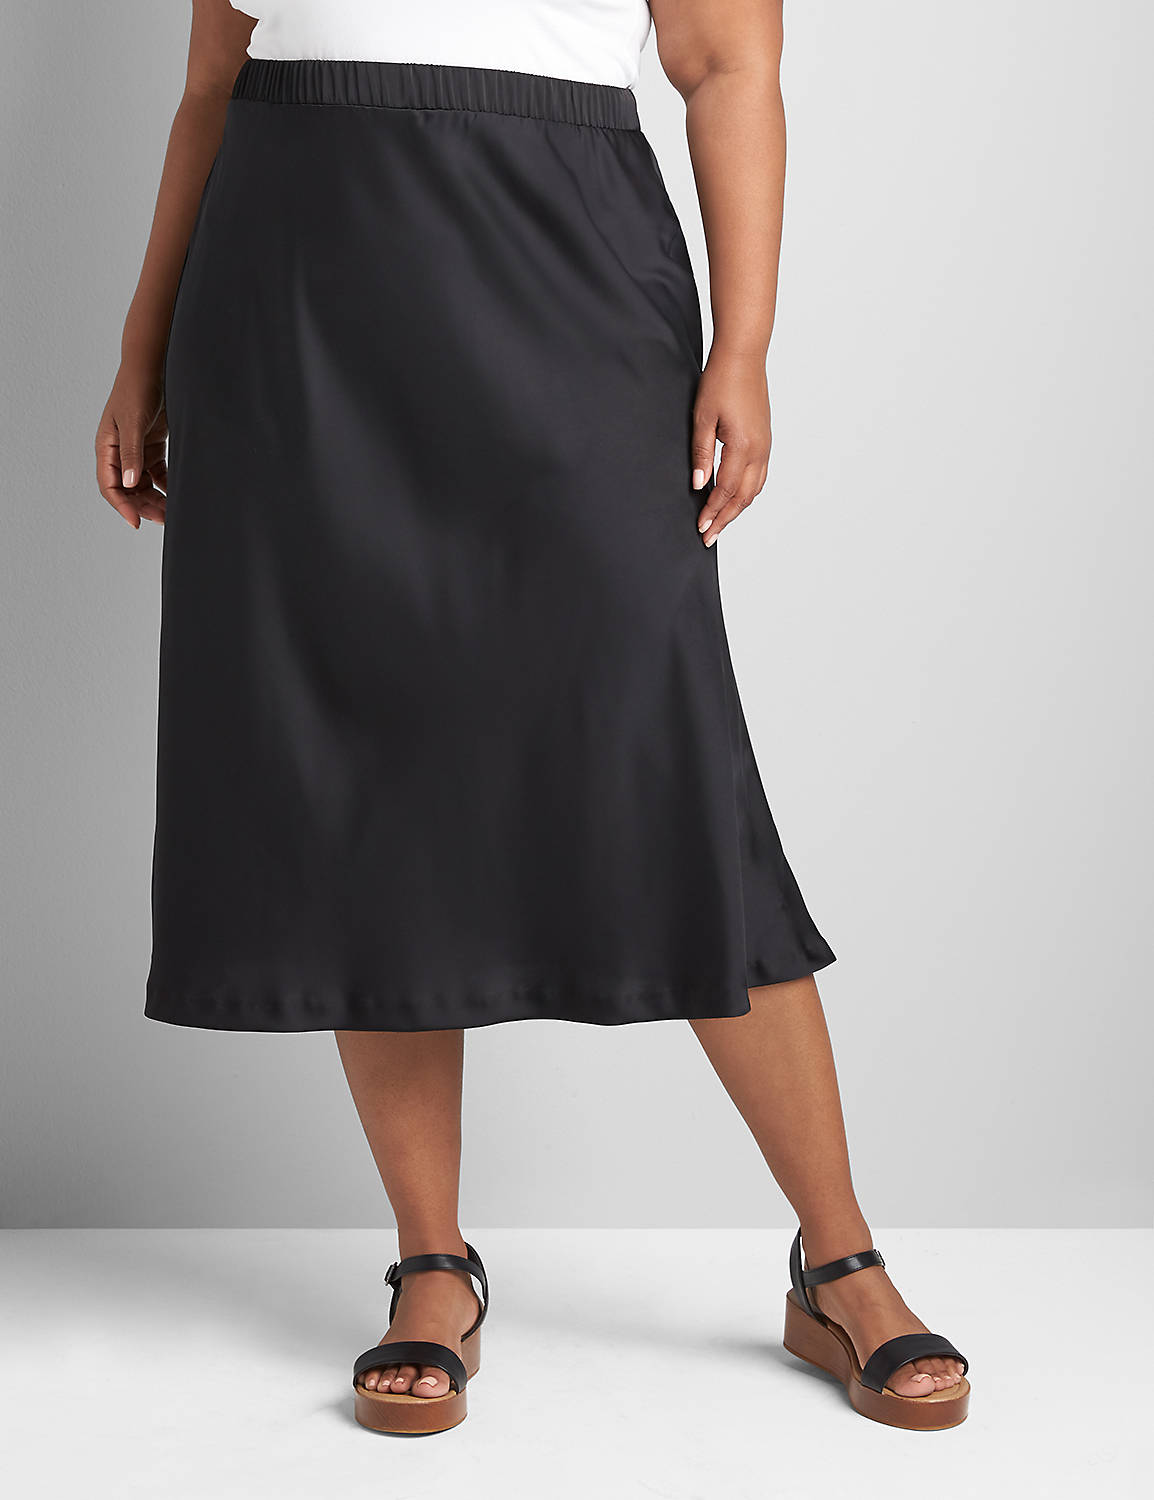 Satin Slip Skirt Product Image 3